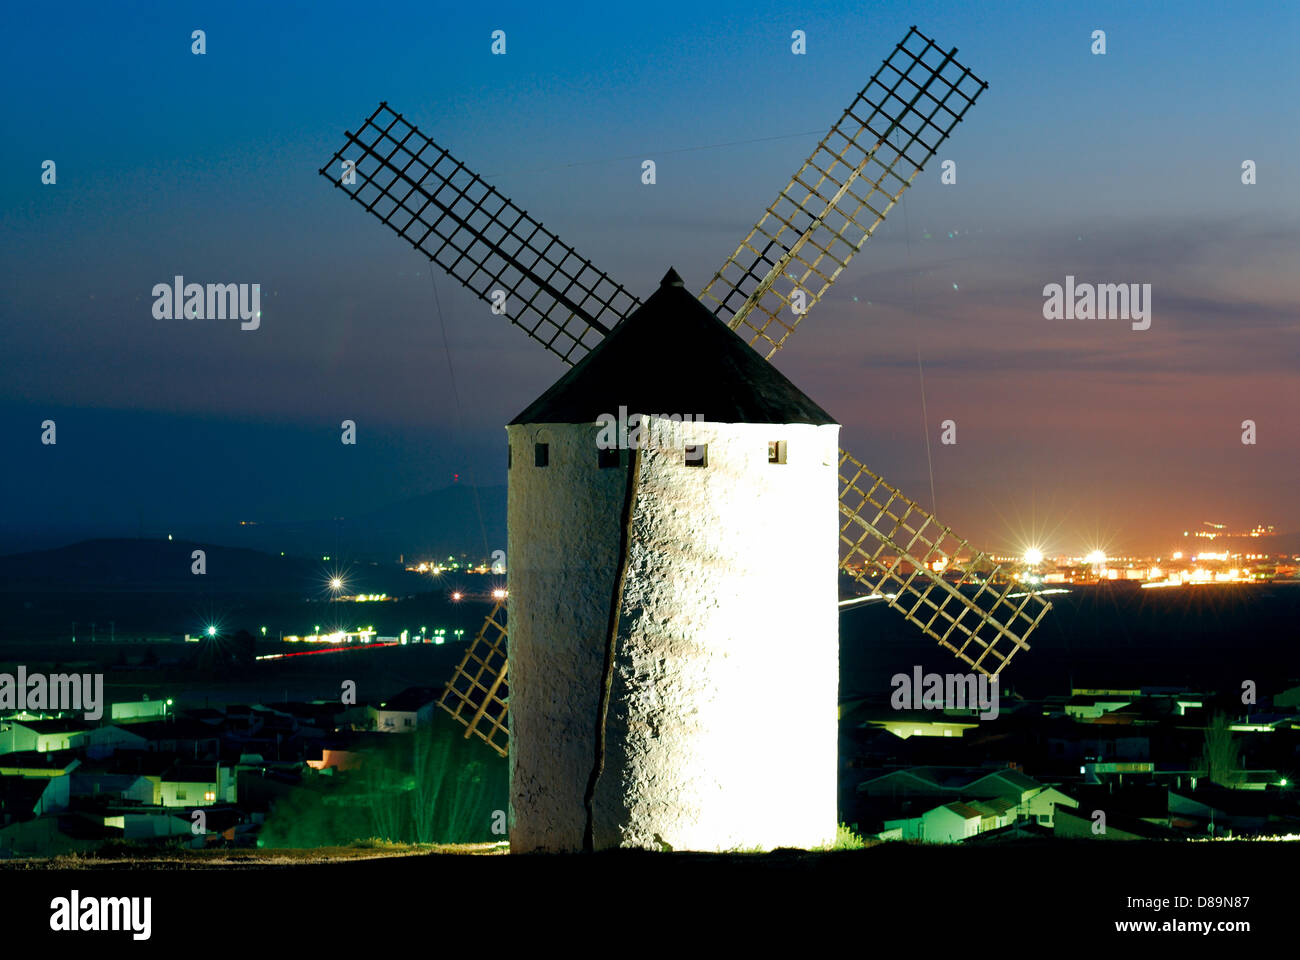 Spanien, Castilla-La Mancha: Nächtlich beleuchtete Windmühle von Consuegra Foto Stock